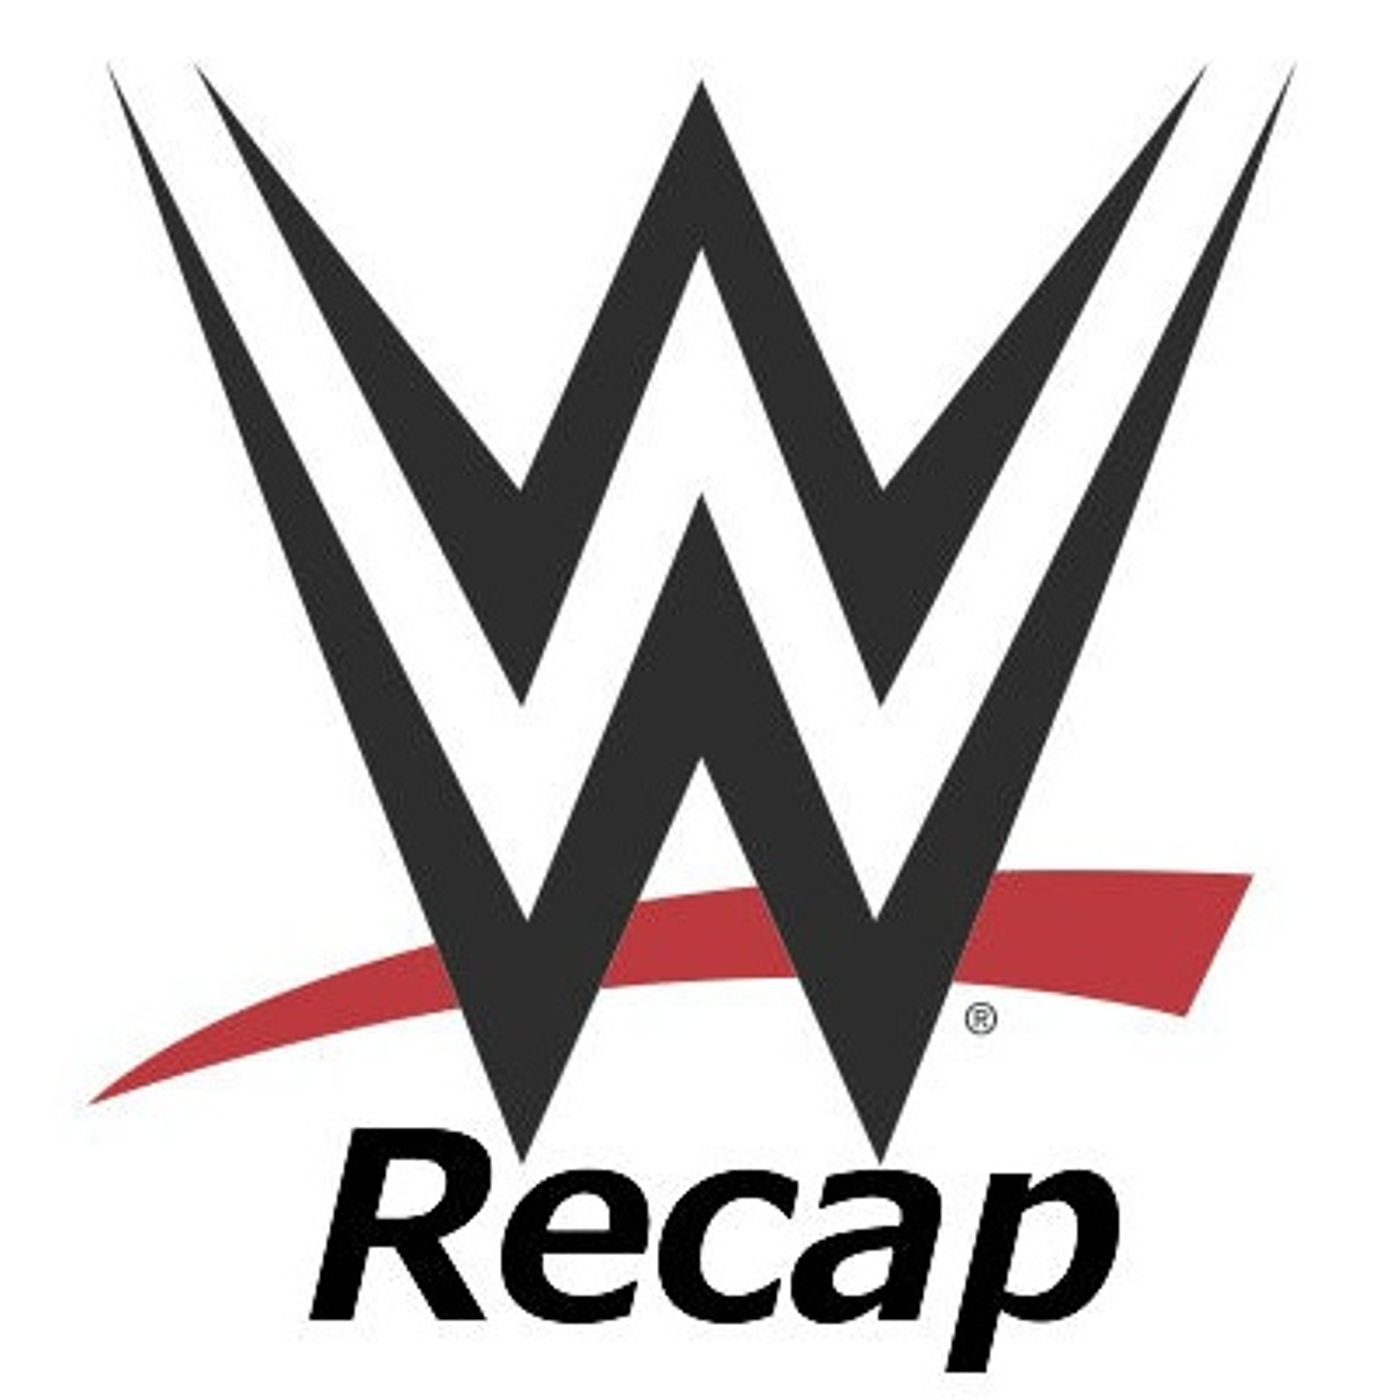 WWE Recap